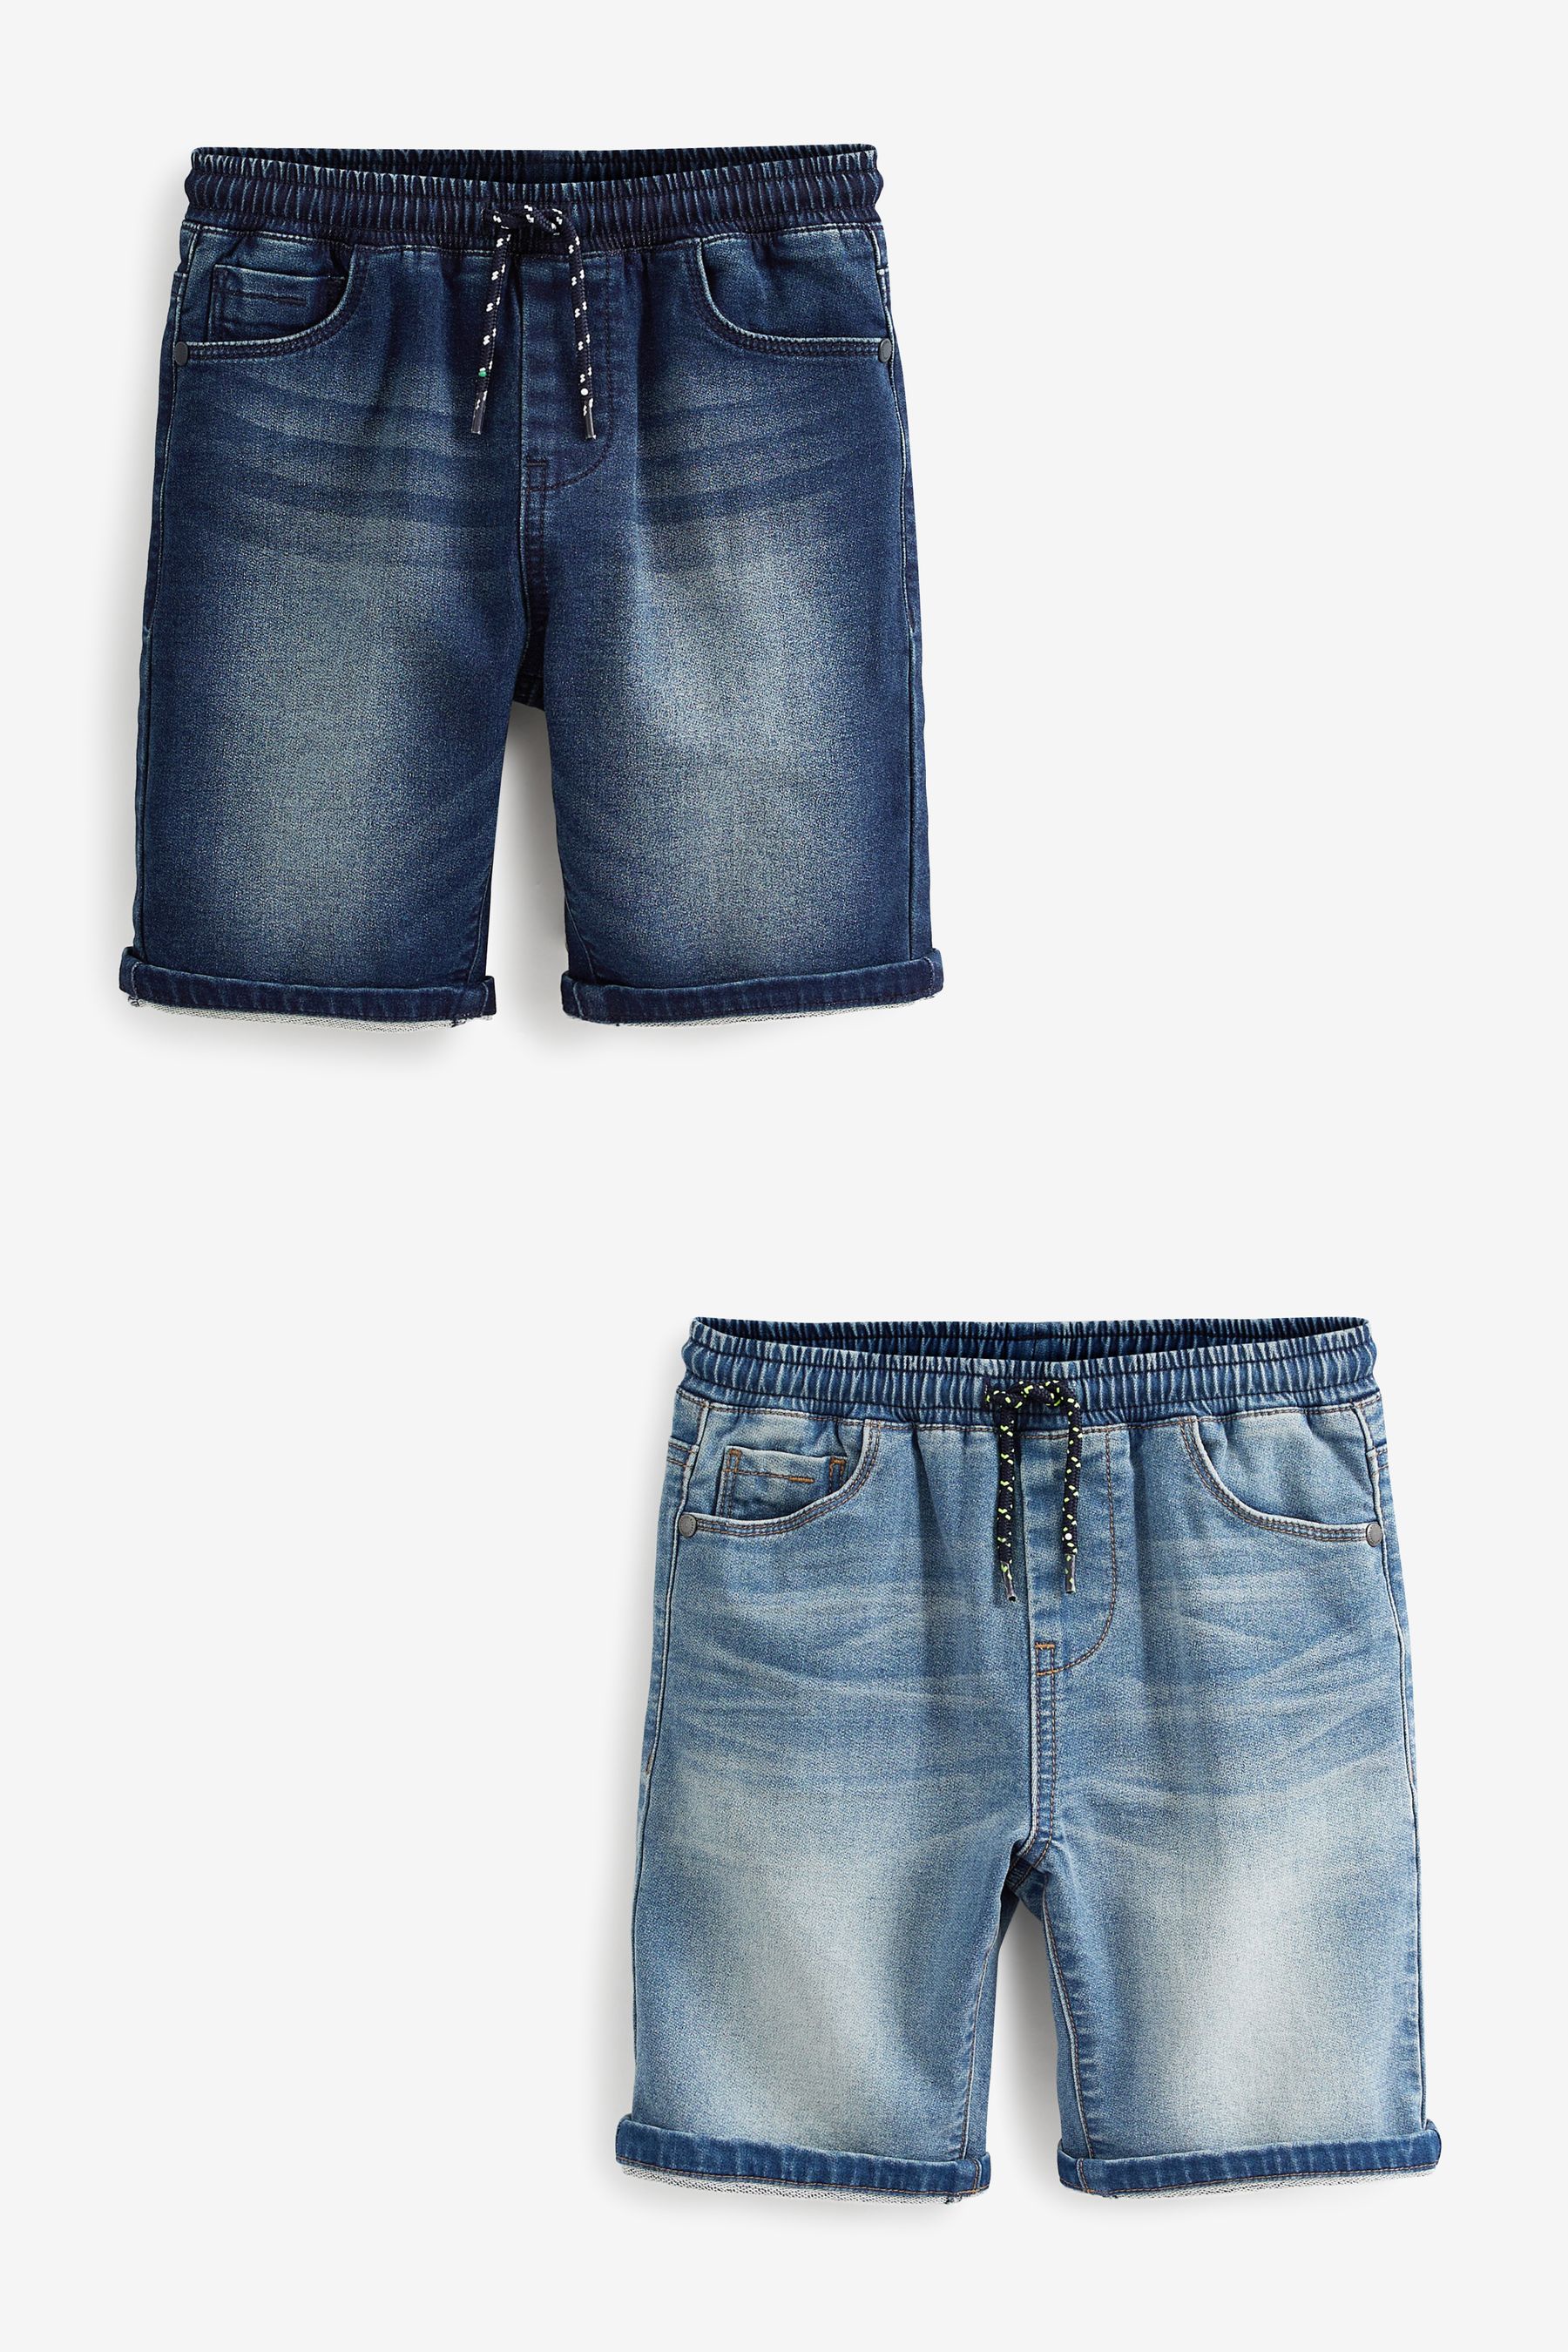 Комплект из 2 пар джинсовых шорт из джерси Next, синий